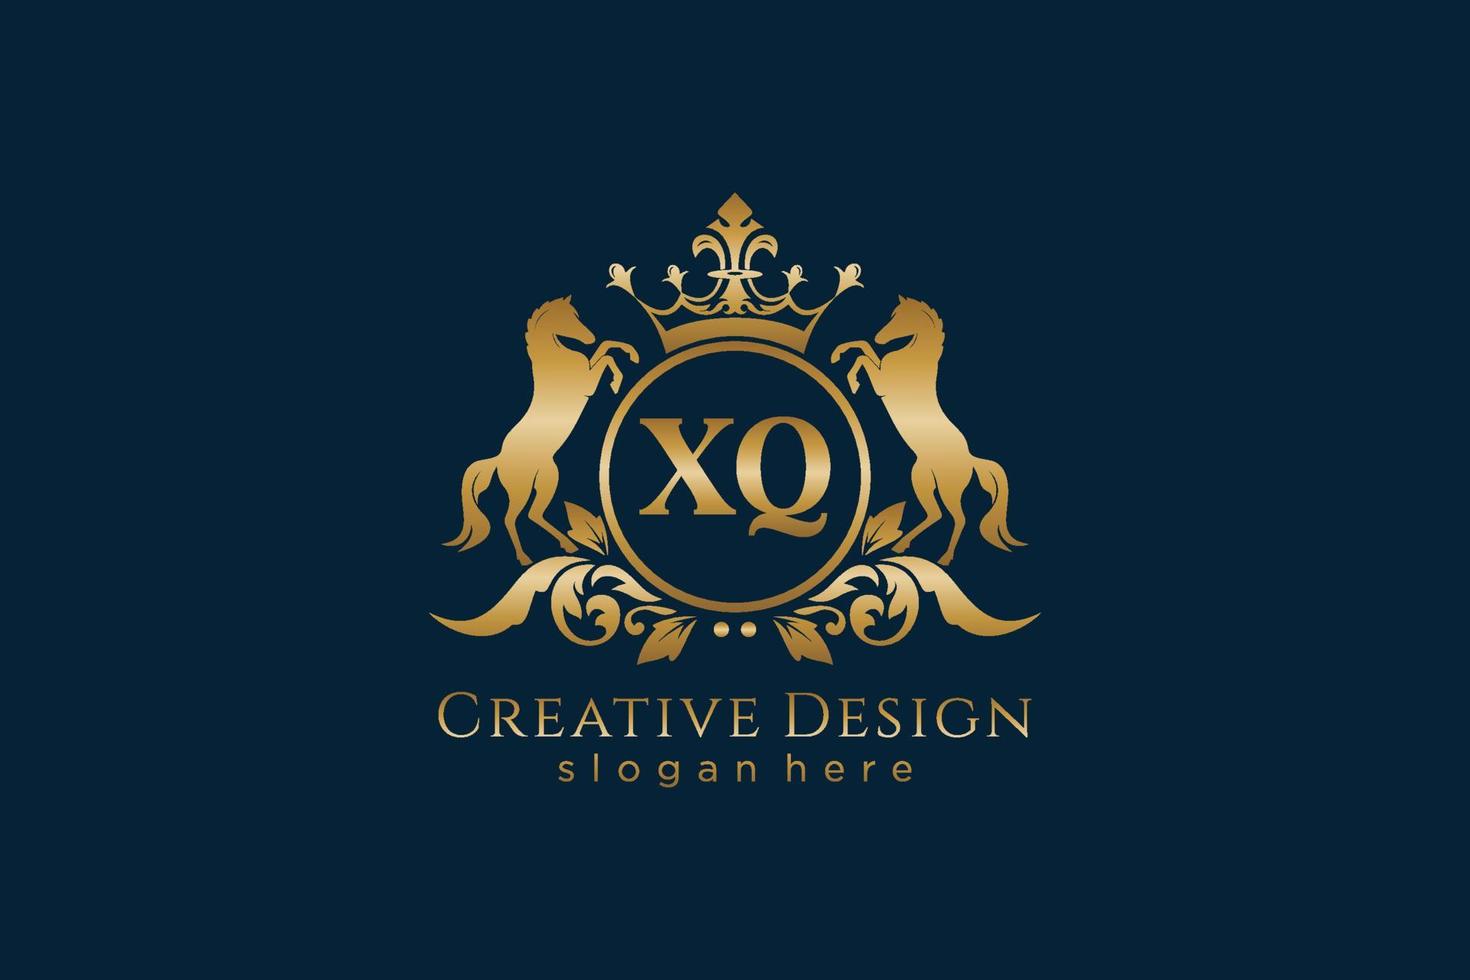 crête dorée initiale xq rétro avec cercle et deux chevaux, modèle de badge avec volutes et couronne royale - parfait pour les projets de marque de luxe vecteur